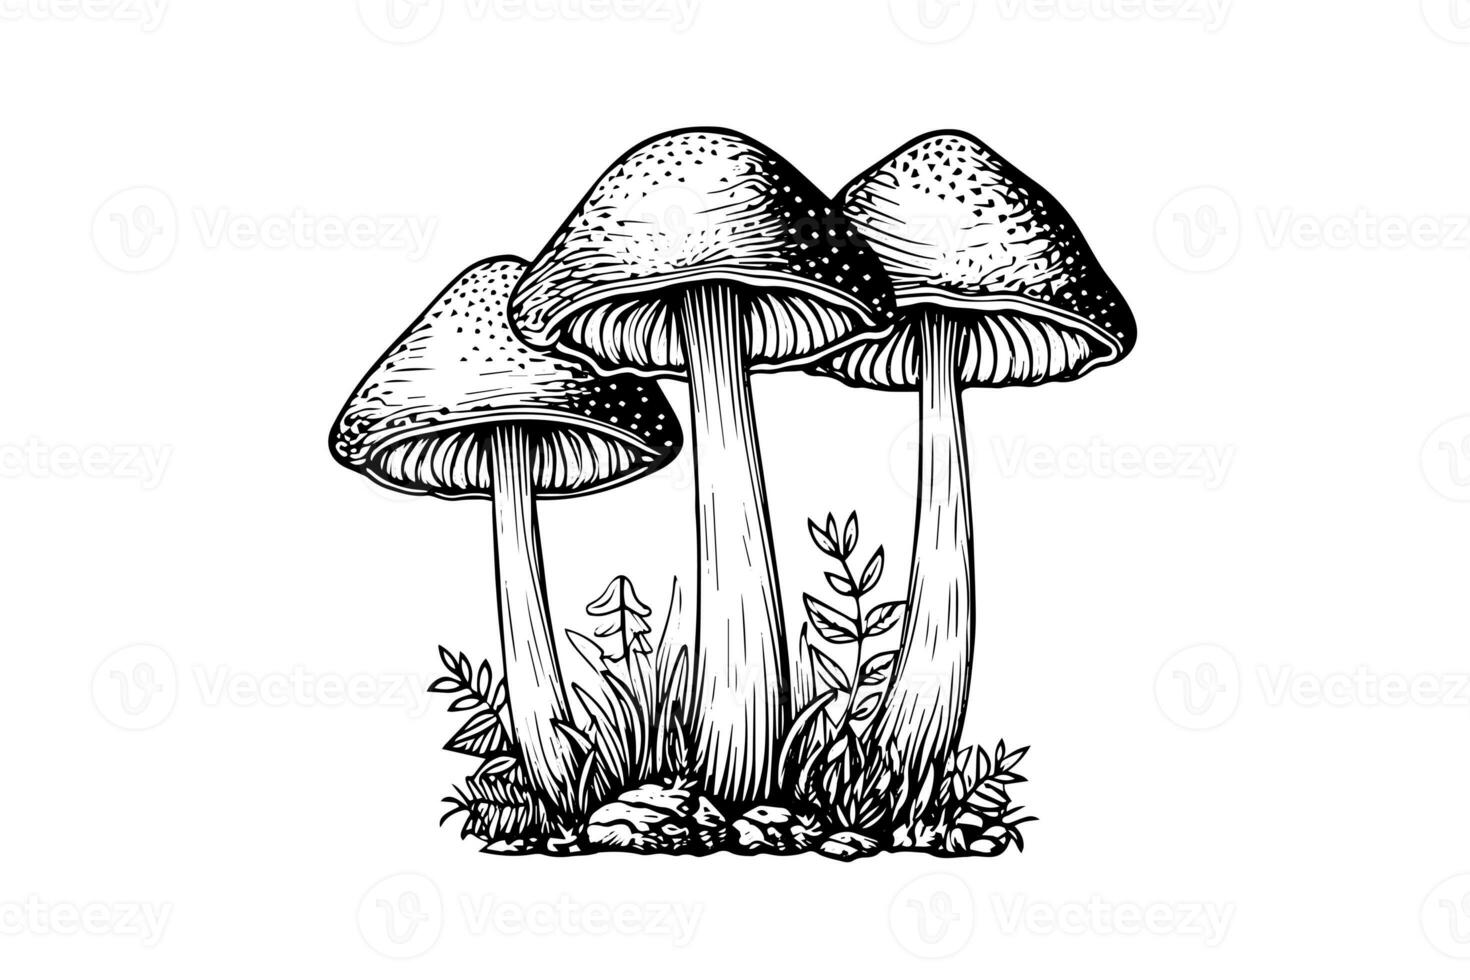 mouche agaric ou amanite champignons groupe croissance dans herbe gravure style. vecteur illustration. photo